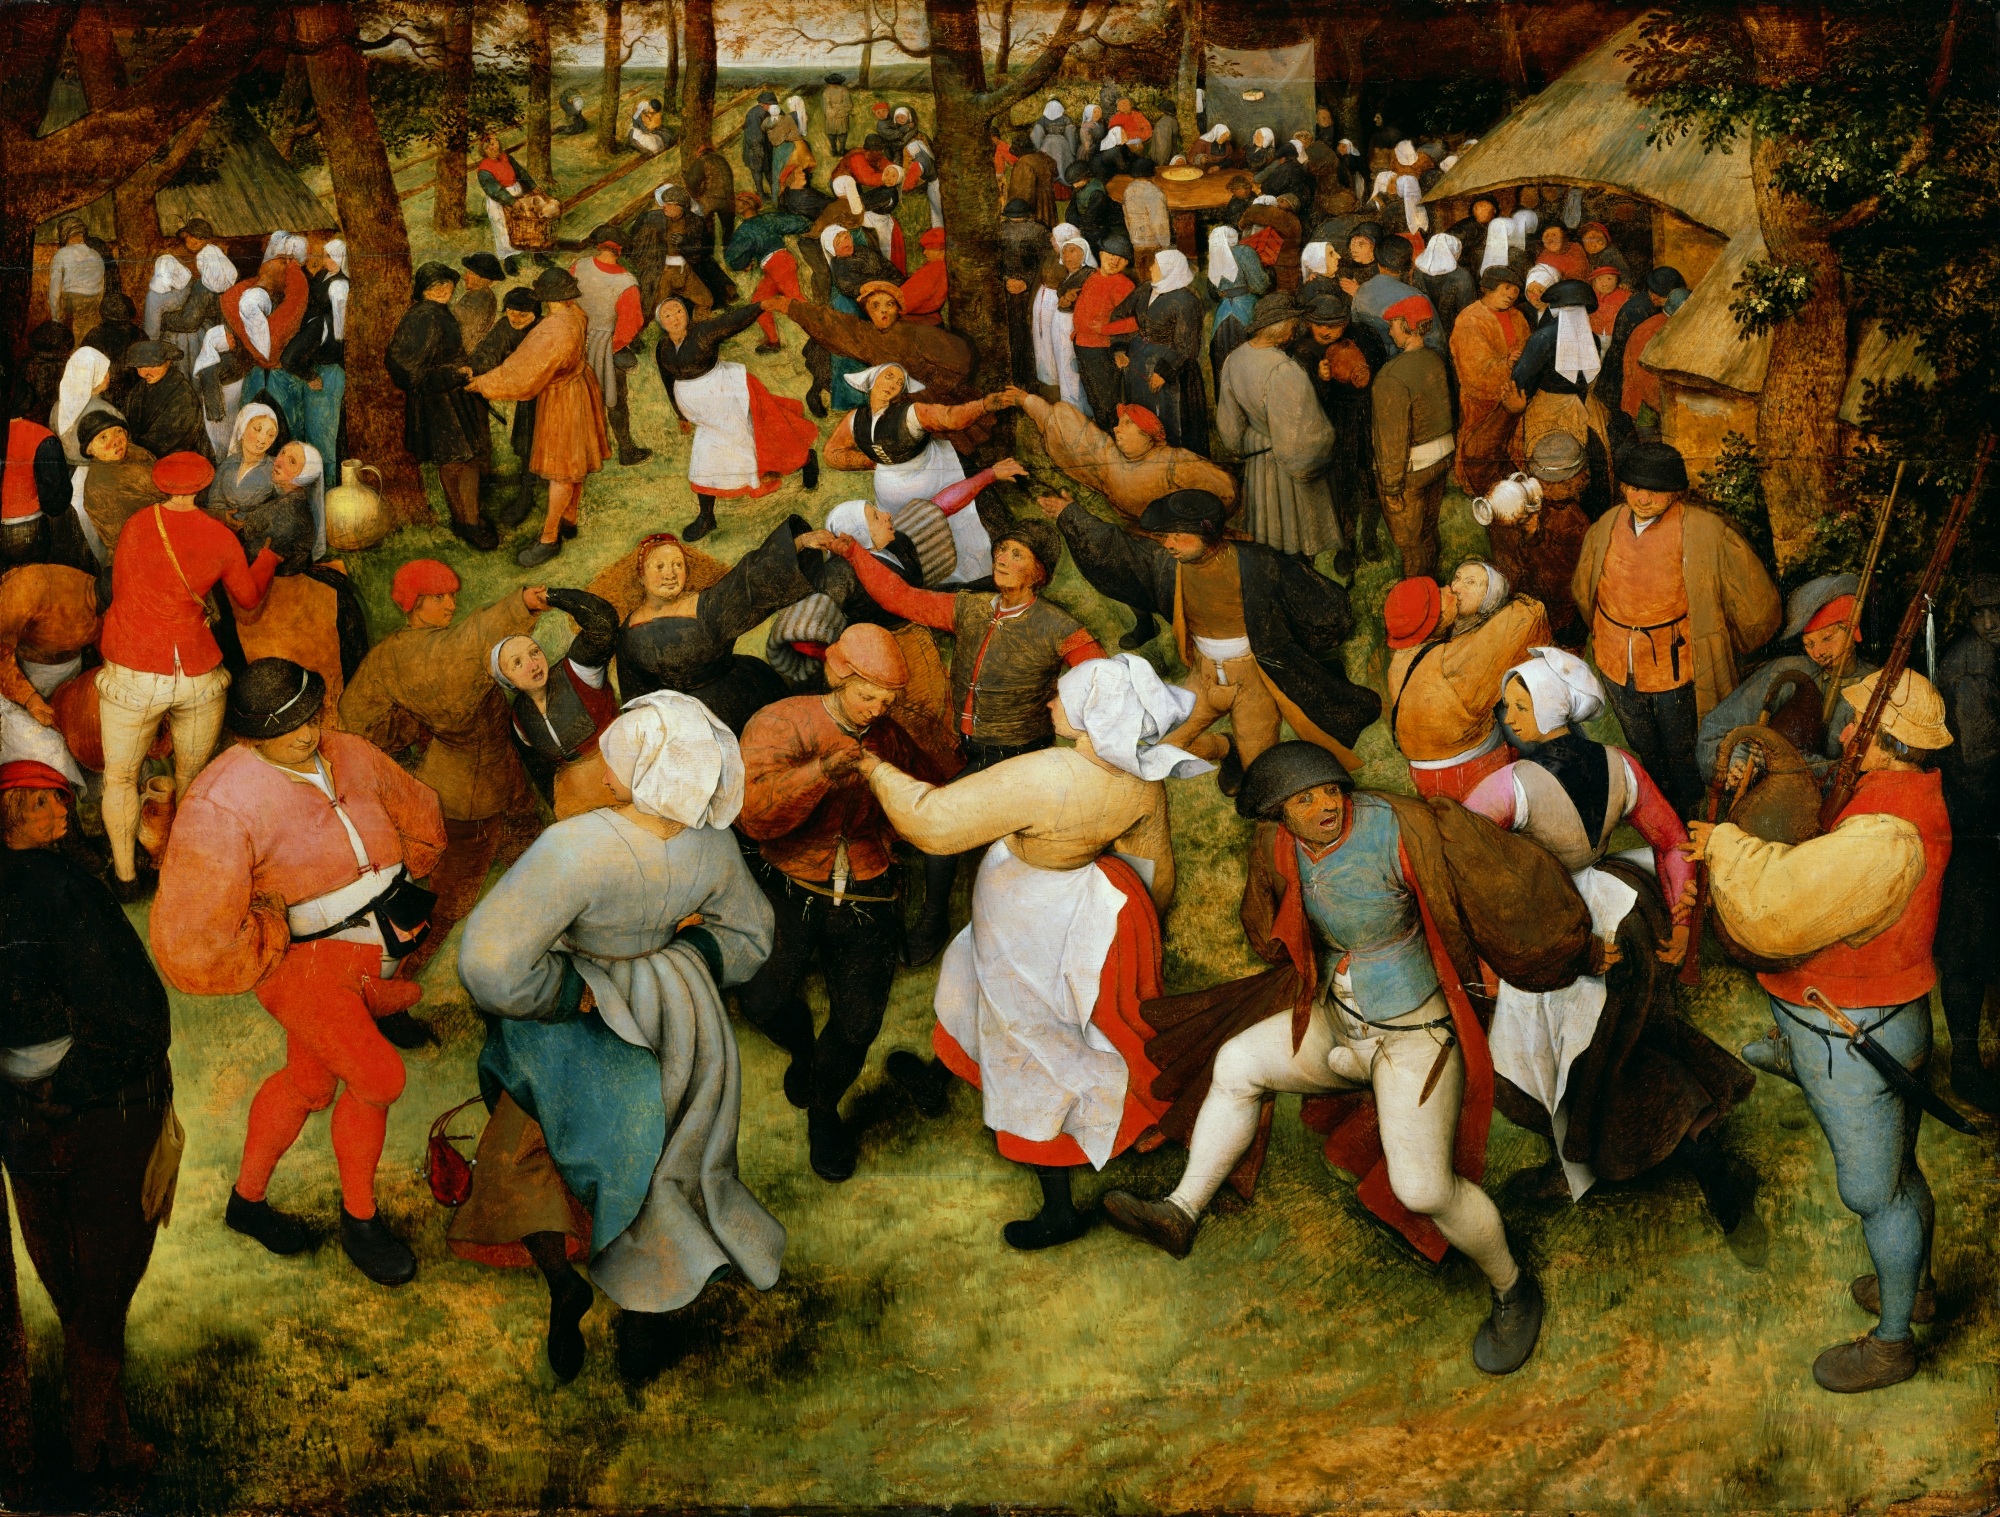 婚禮上的舞蹈 by Pieter Bruegel the Elder - 1566 - 119.4 cm × 157.5 cm 